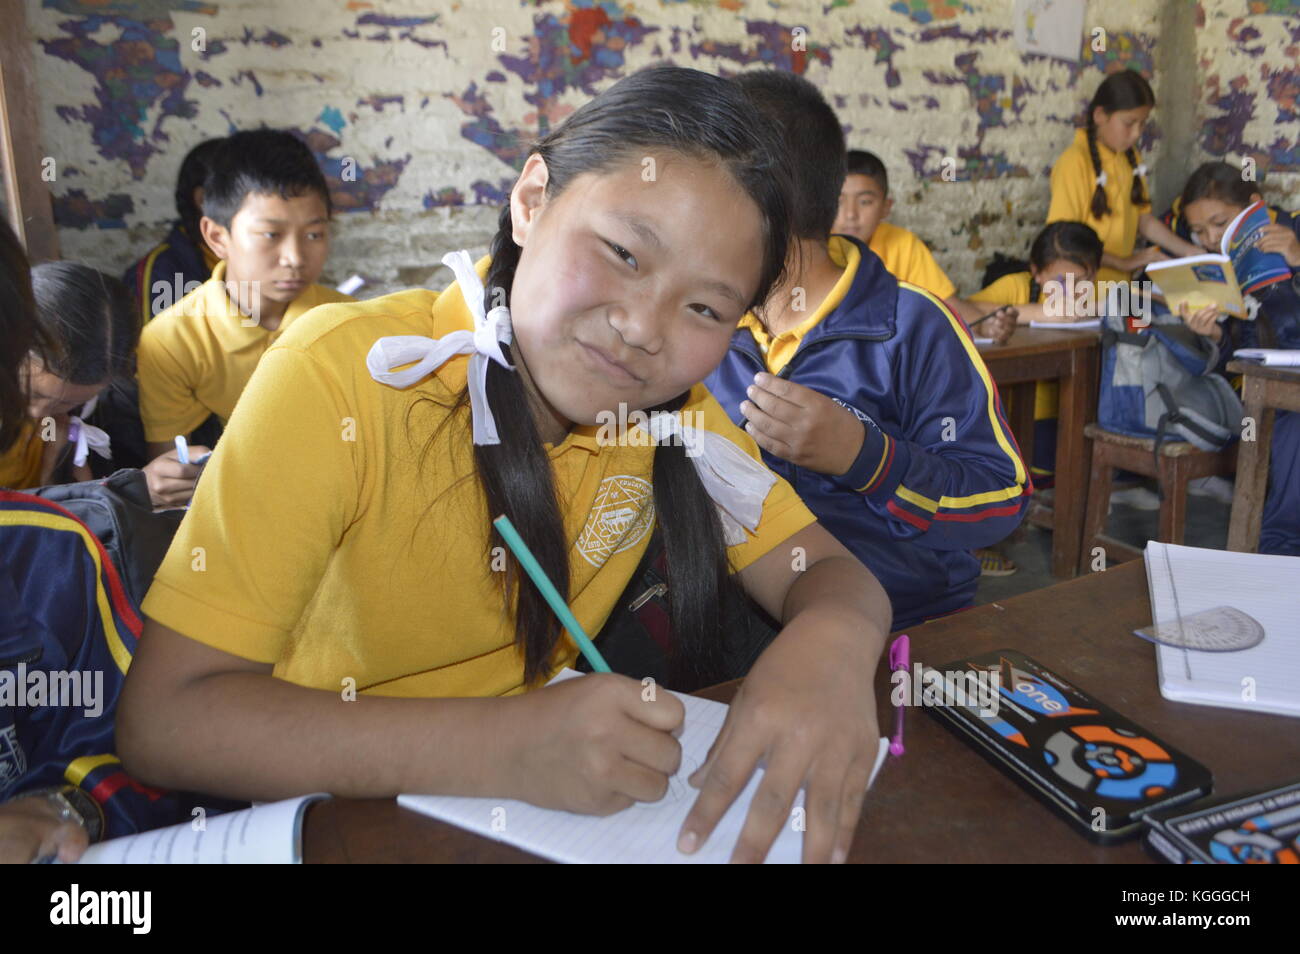 Adolescente nepalés con arcos blancos dibujando el pelo y posando para la foto, en el fondo otros estudiantes, Katmandú, Nepal. Foto de stock